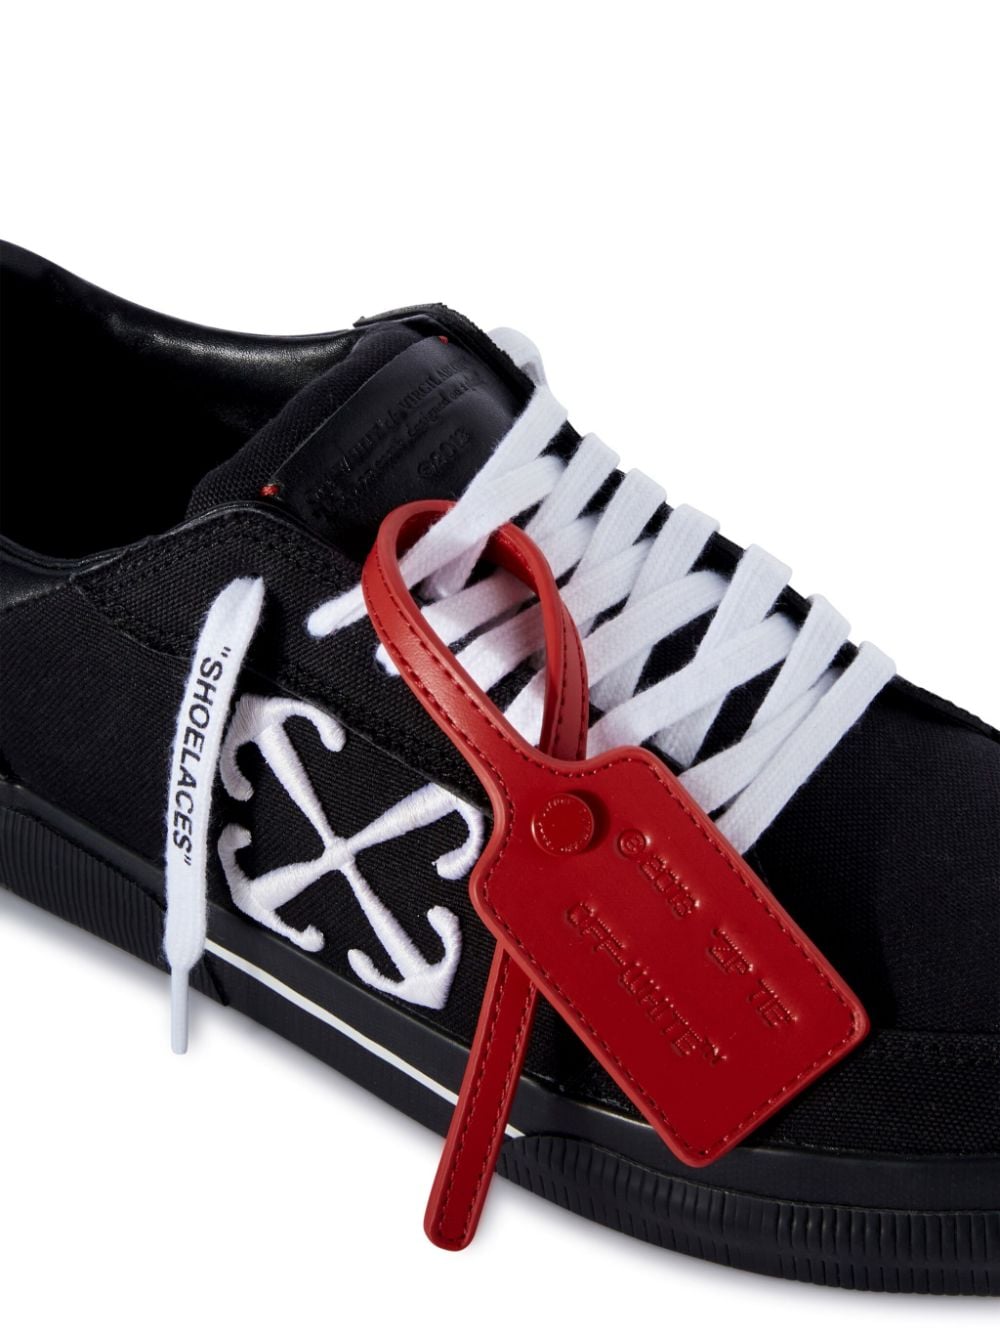 Sneaker in tela vulcanizzata con etichetta a contrasto<br><br><br>